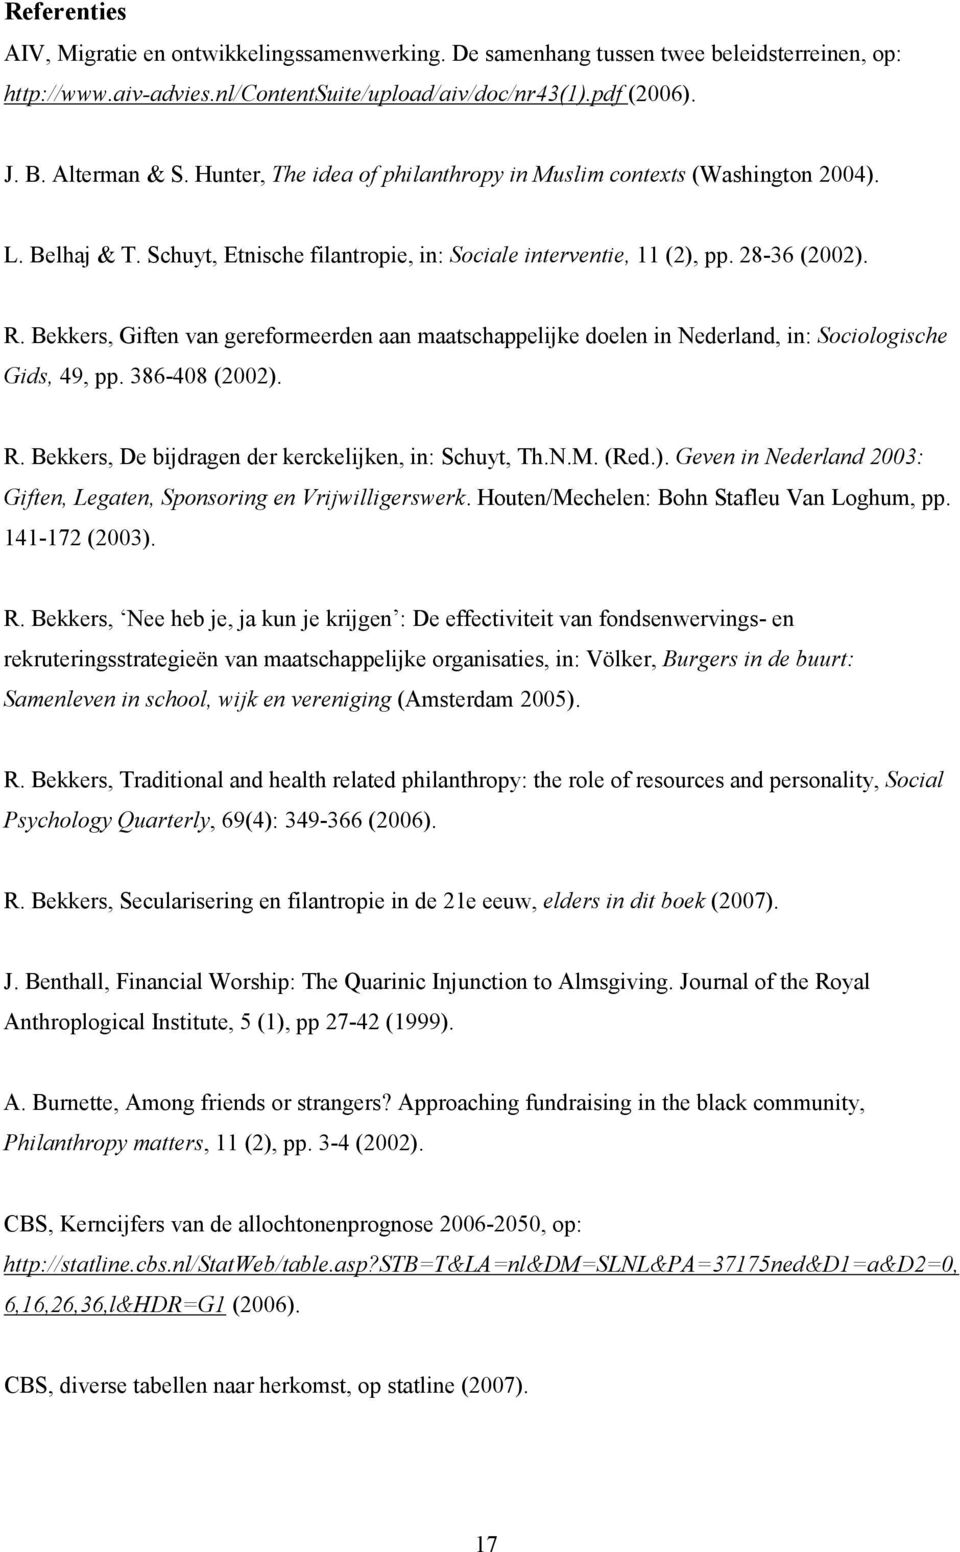 Bekkers, Giften van gereformeerden aan maatschappelijke doelen in Nederland, in: Sociologische Gids, 49, pp. 386-408 (2002). R. Bekkers, De bijdragen der kerckelijken, in: Schuyt, Th.N.M. (Red.). Geven in Nederland 2003: Giften, Legaten, Sponsoring en Vrijwilligerswerk.